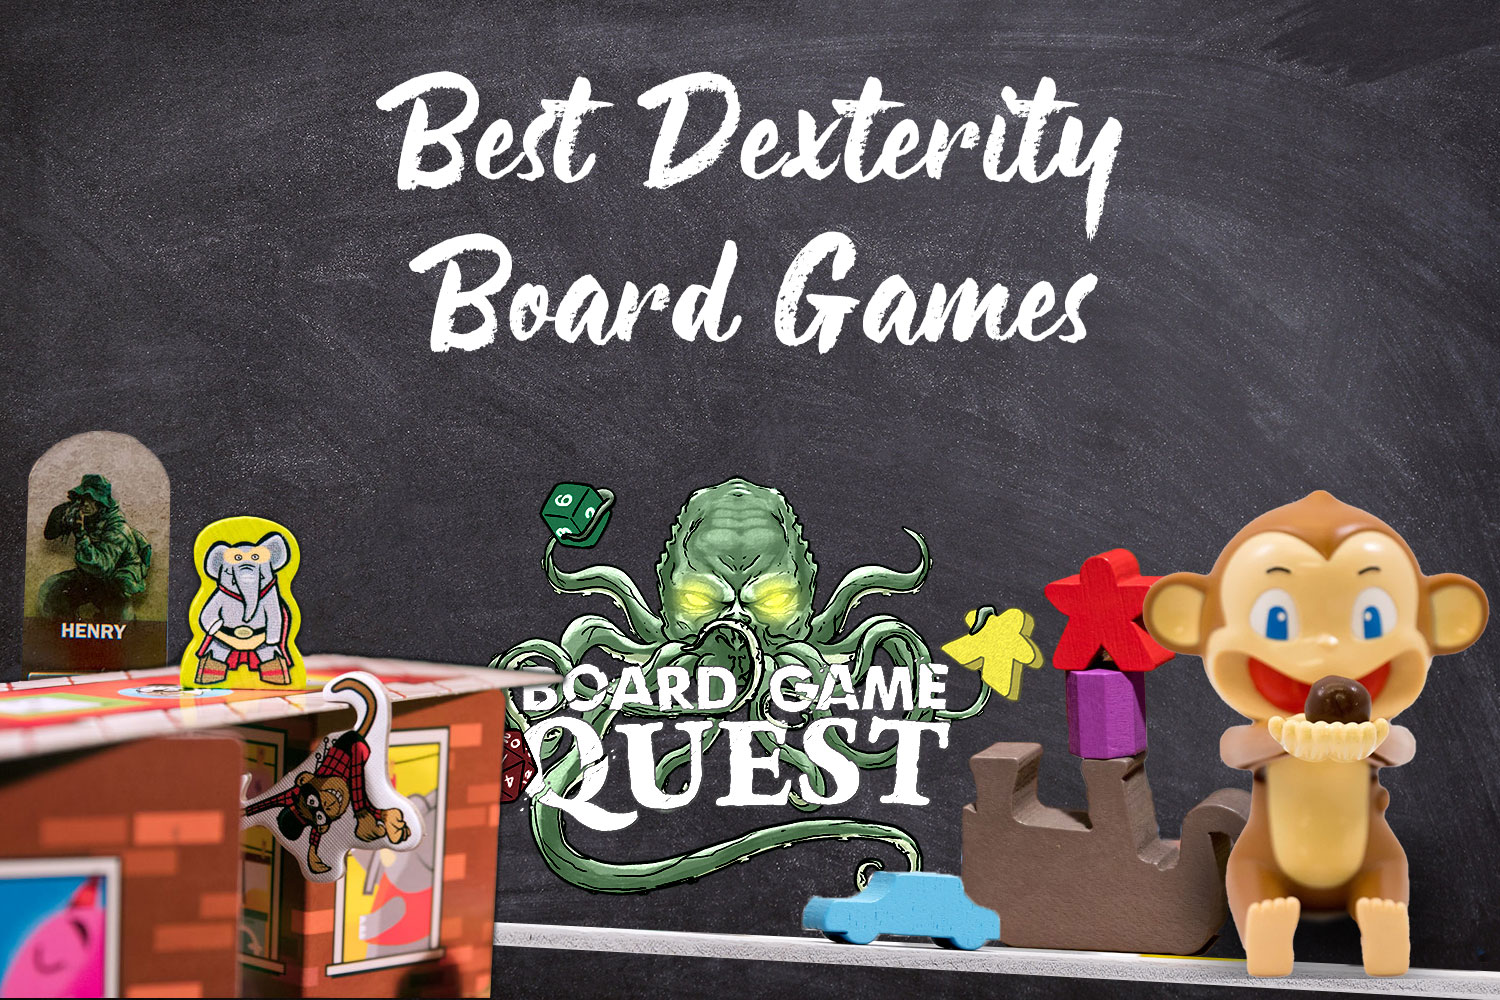 Best Dexterity Board Games